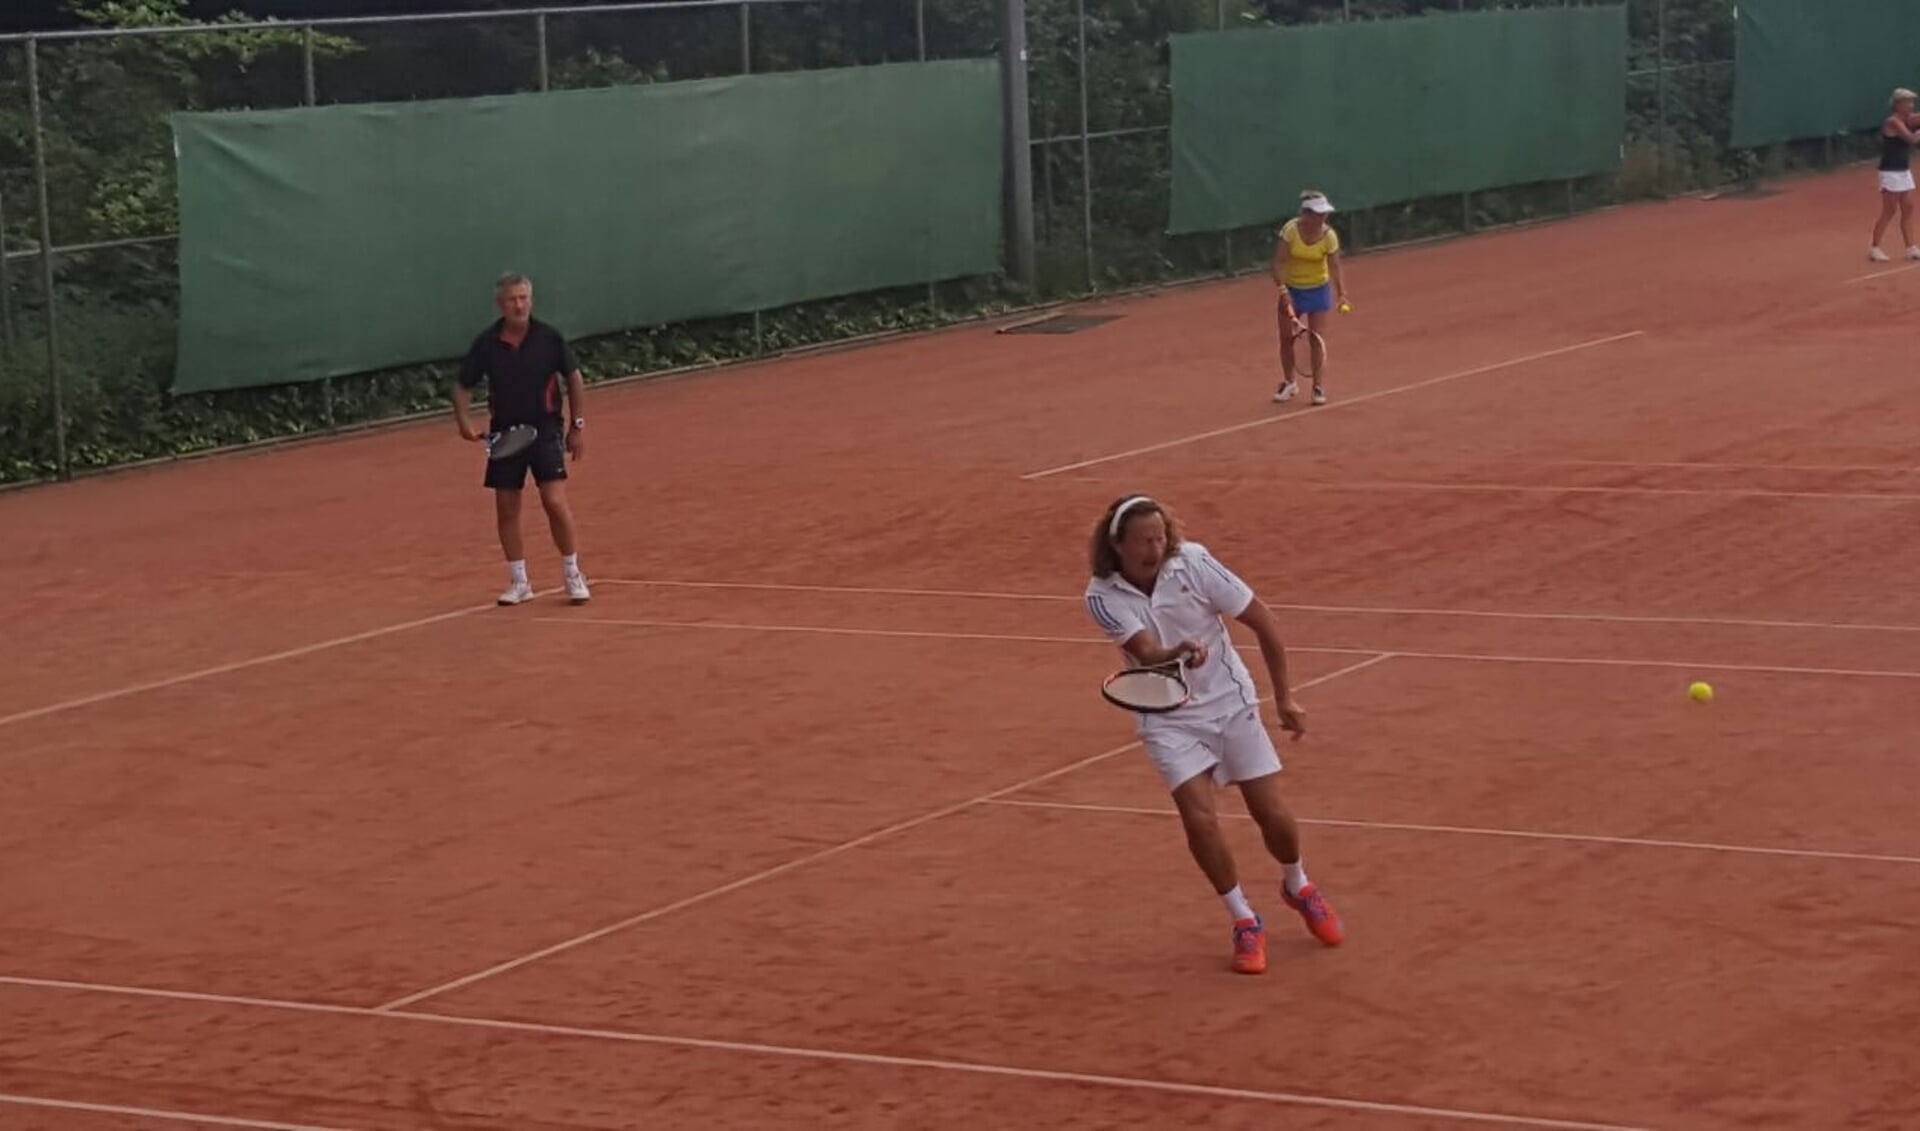 Jurjen Abels, op de voorgrond, actief als tennisser bij ETC.